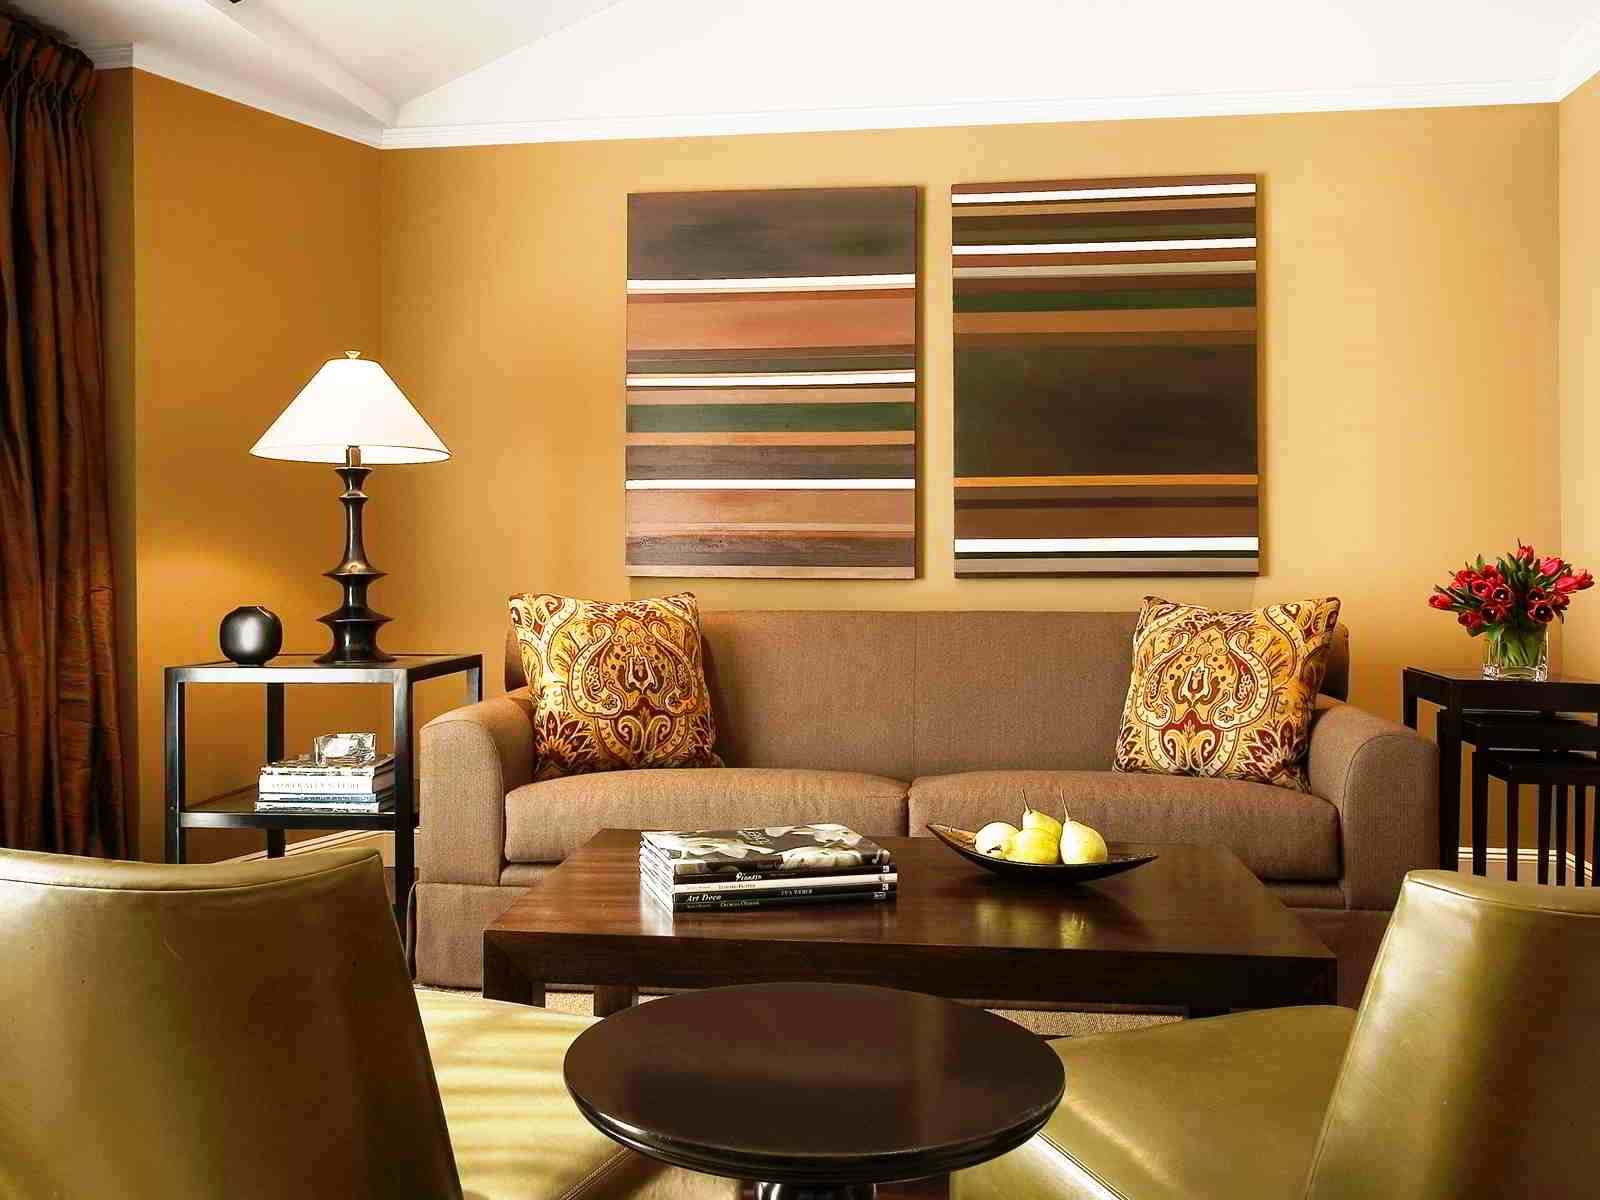 109 Wallpaper Dinding Ruang Tamu Minimalis Coklat | Wallpaper Dinding